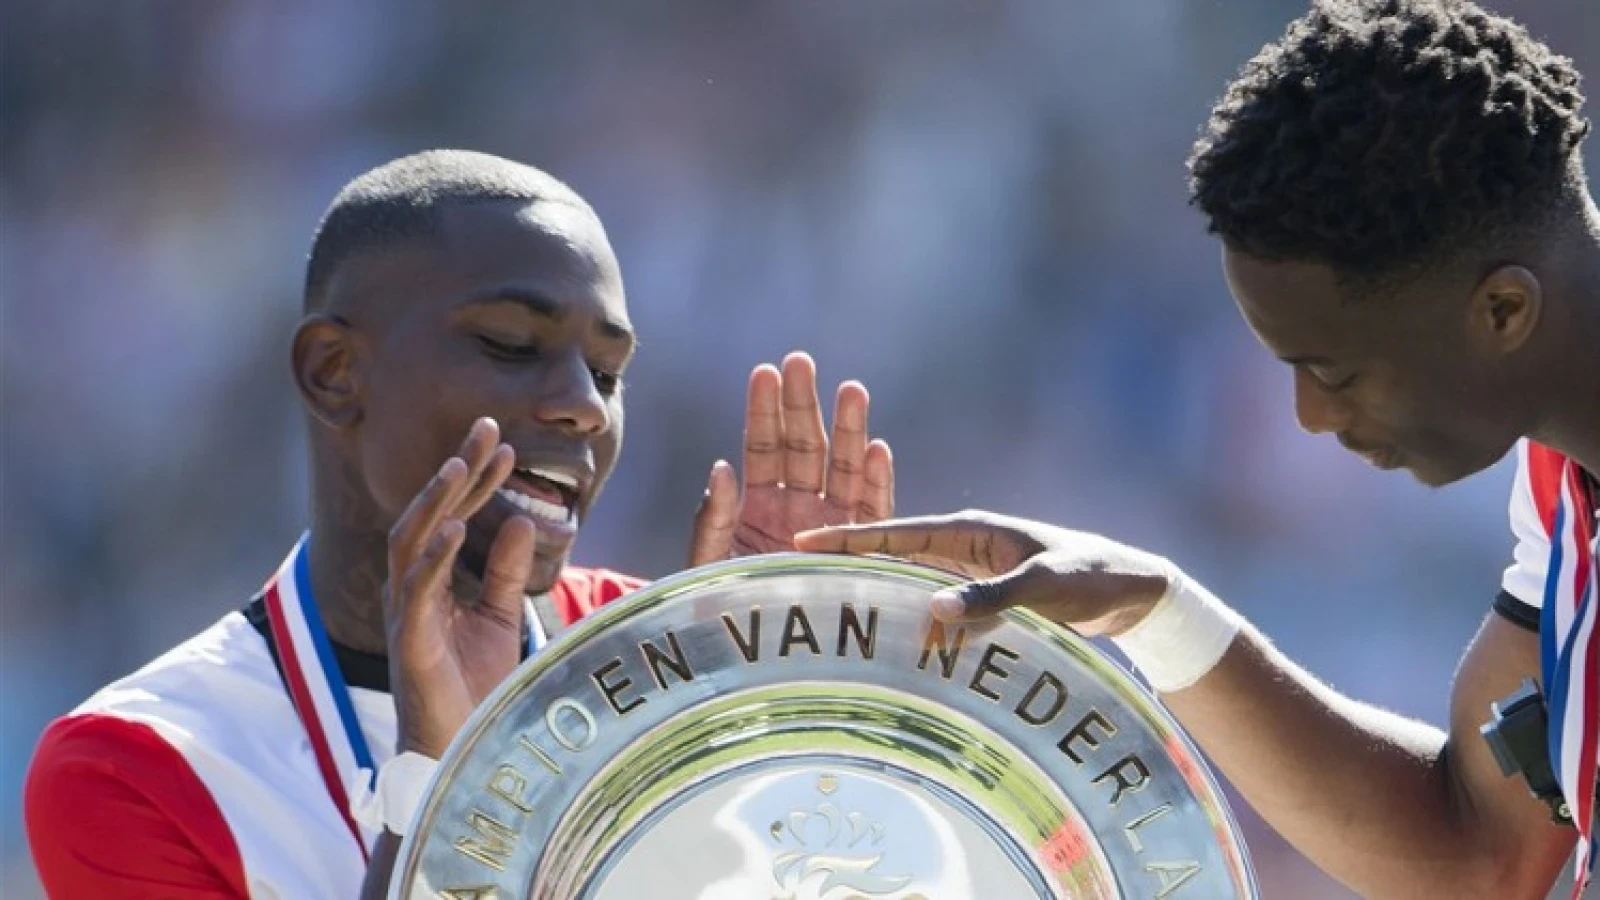 Elia reageert op social media: 'Feyenoord till i die'